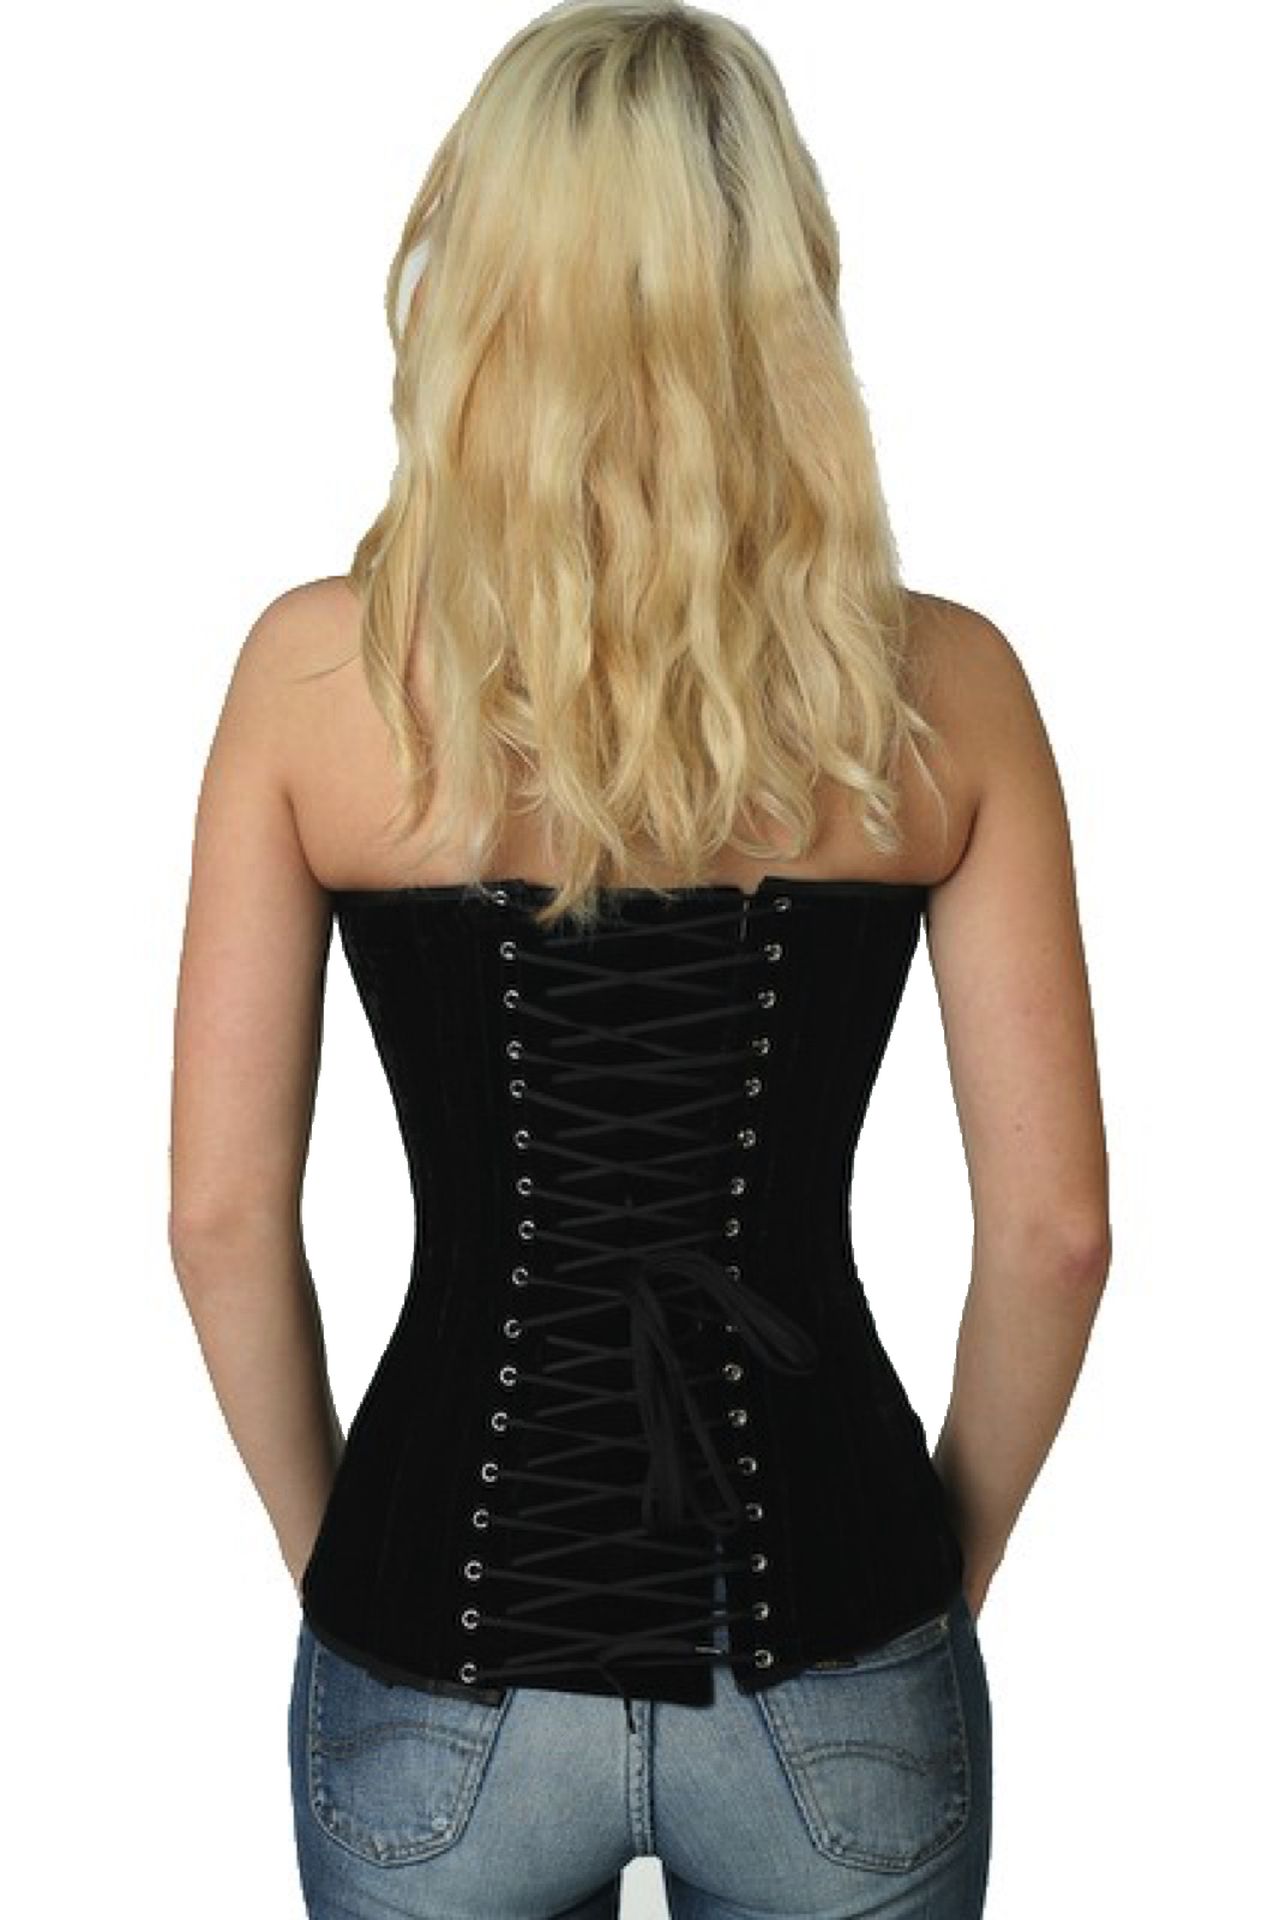 Fluweel corset zwart volborst Korset vy60